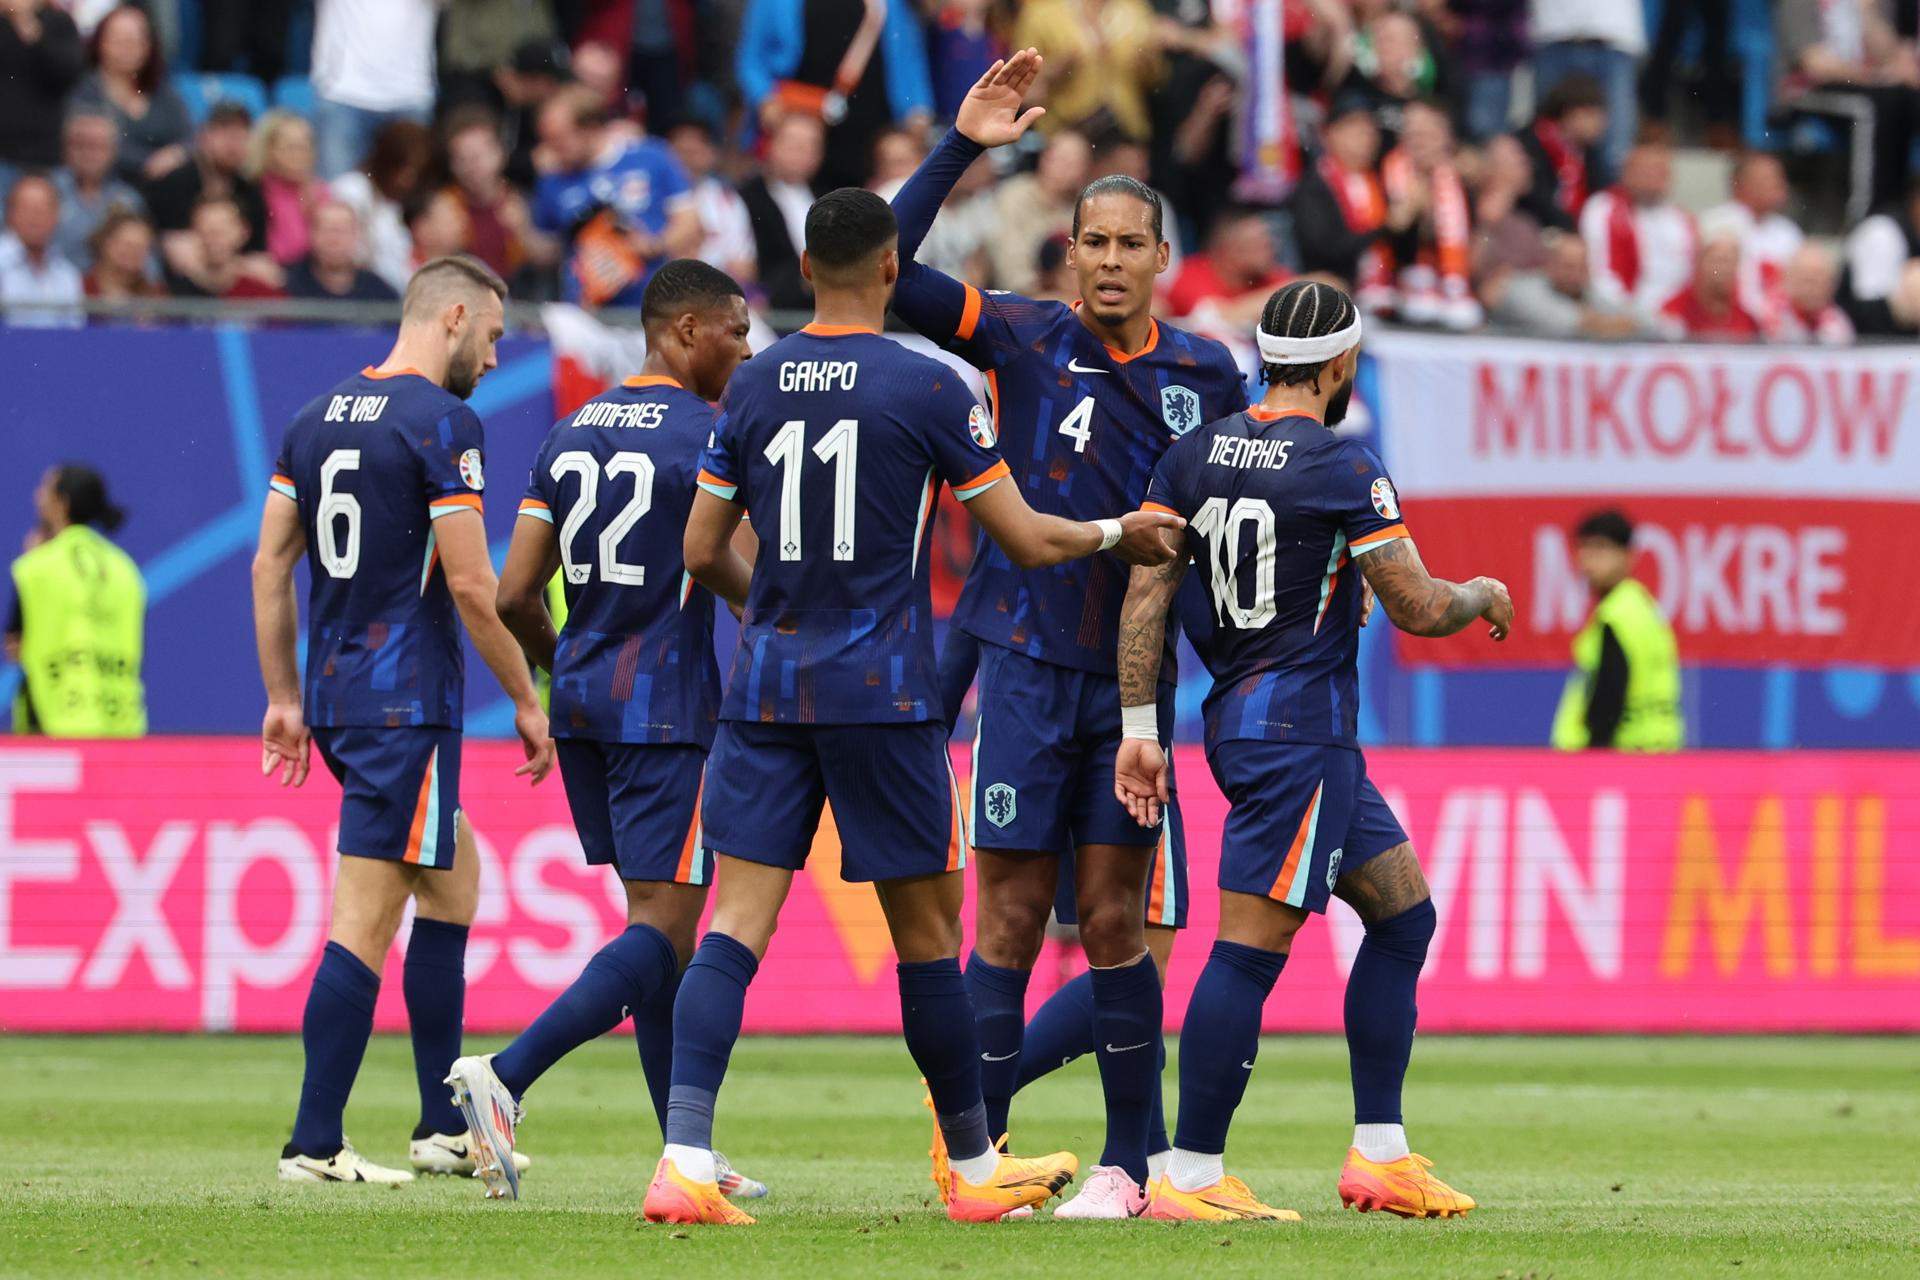 Els Països Baixos salven els mobles davant d'una combativa Polònia en el seu primer partit de l'Eurocopa (1-2)